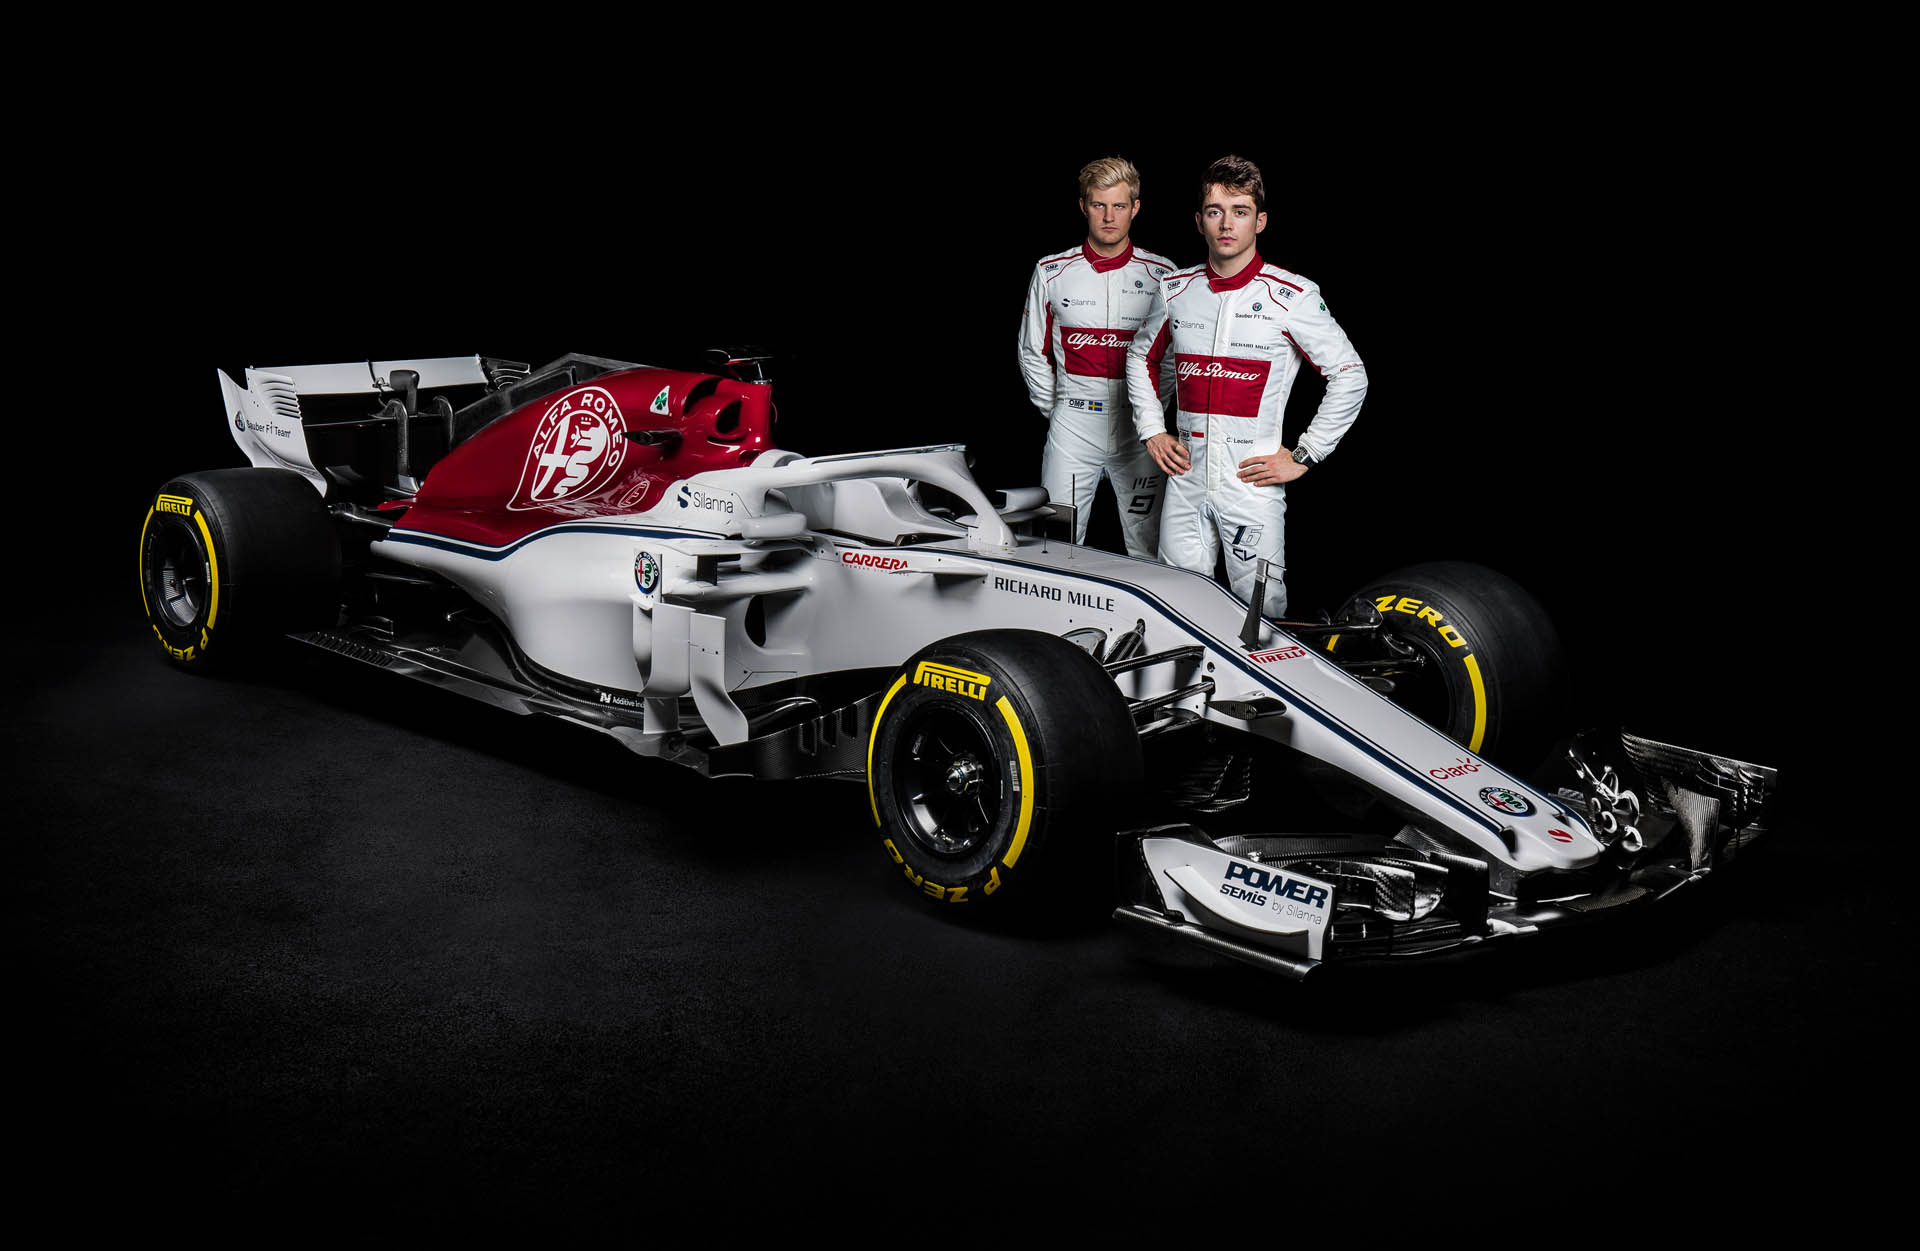 Тимот на Alfa Romeo Sauber го претстави новиот C37 болид за новата сезона во F1! / ФОТО+ВИДЕО